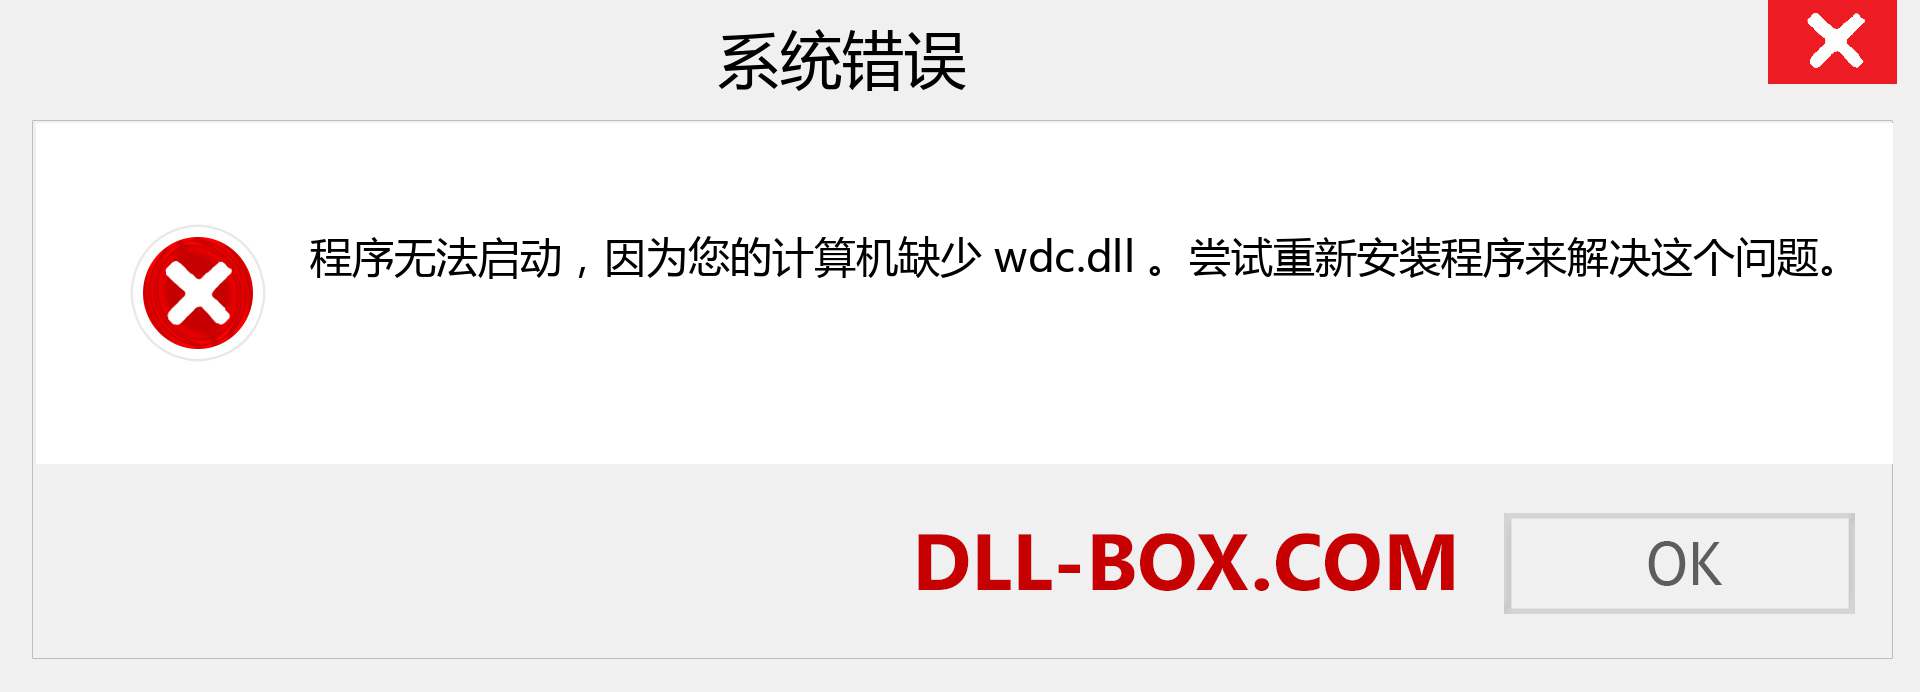 wdc.dll 文件丢失？。 适用于 Windows 7、8、10 的下载 - 修复 Windows、照片、图像上的 wdc dll 丢失错误